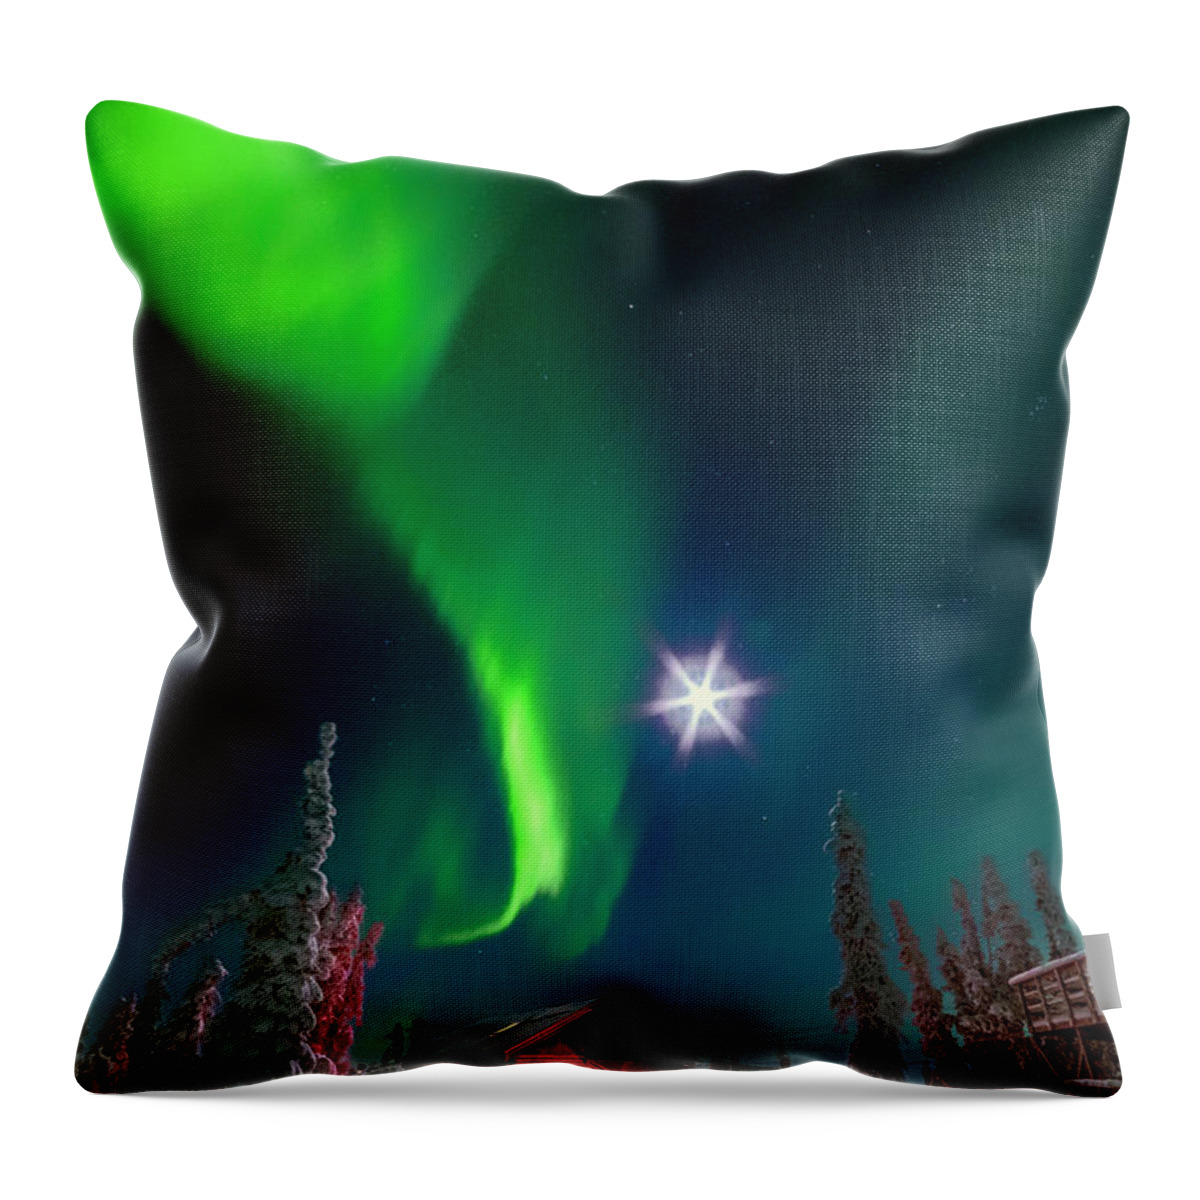 Alaska Throw Pillow featuring the photograph One Night In Alaska #1 by Robert Fawcett